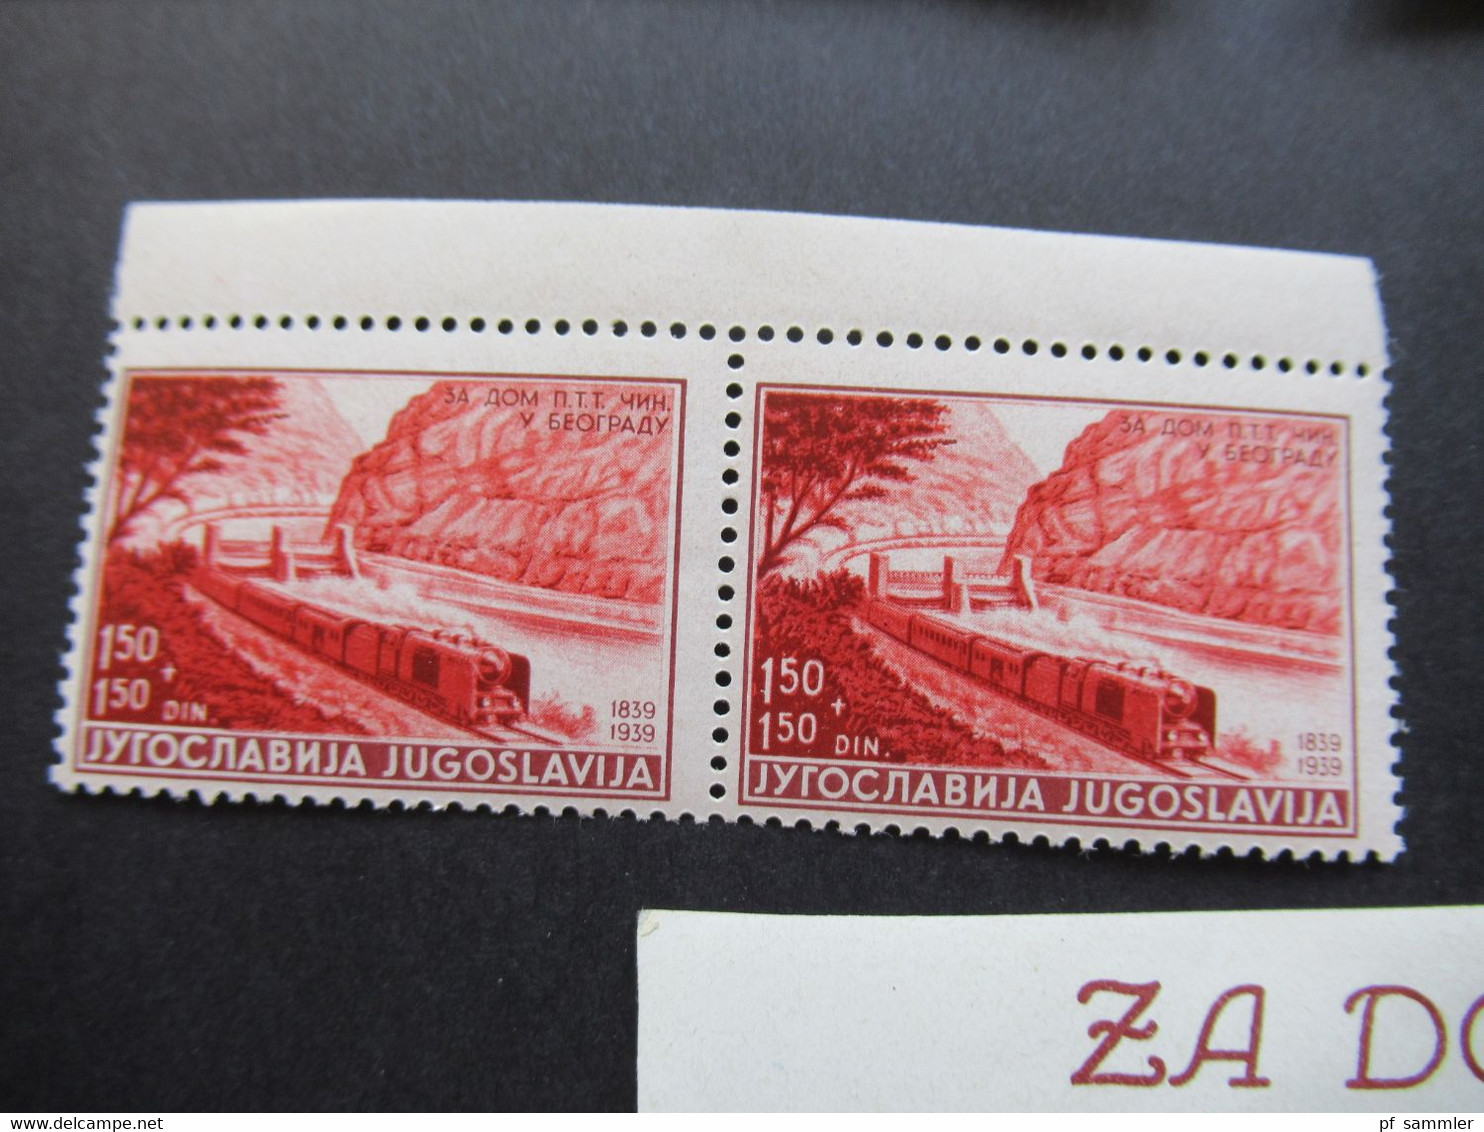 Jugoslawien 1939 Errichtung eines Heimes für Post u. Telegraphenbeamte Nr. 370 / 374 als Paare / Randstücke